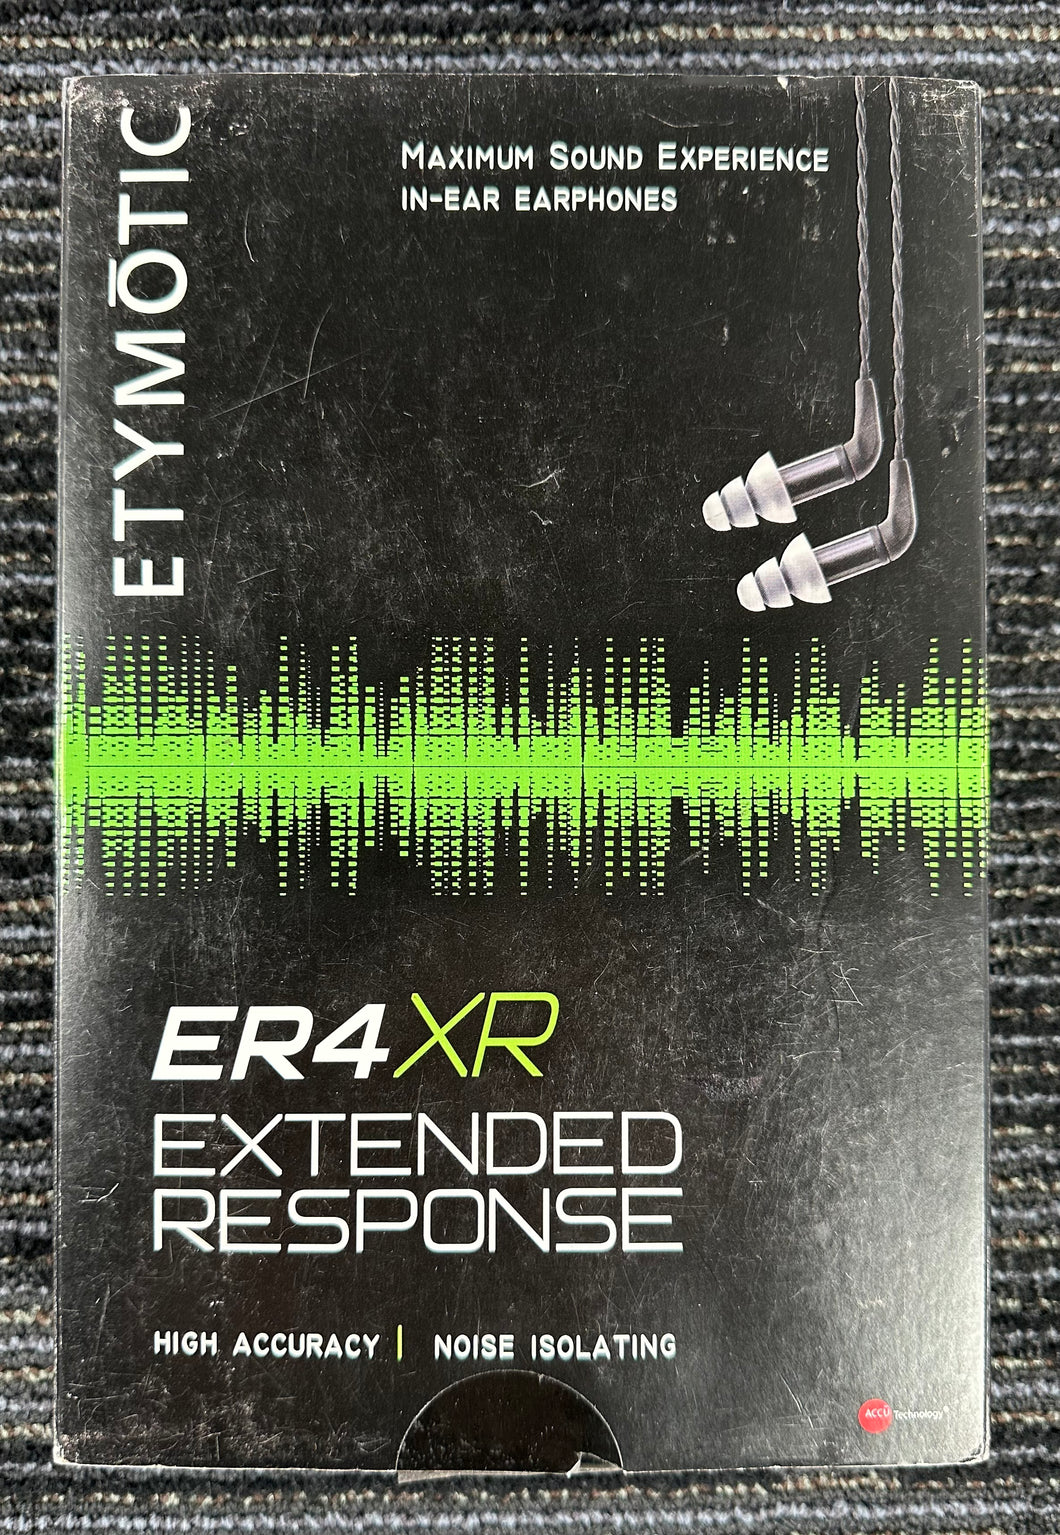 Etymotic ER4XR In-Ear Extended Response Earphones